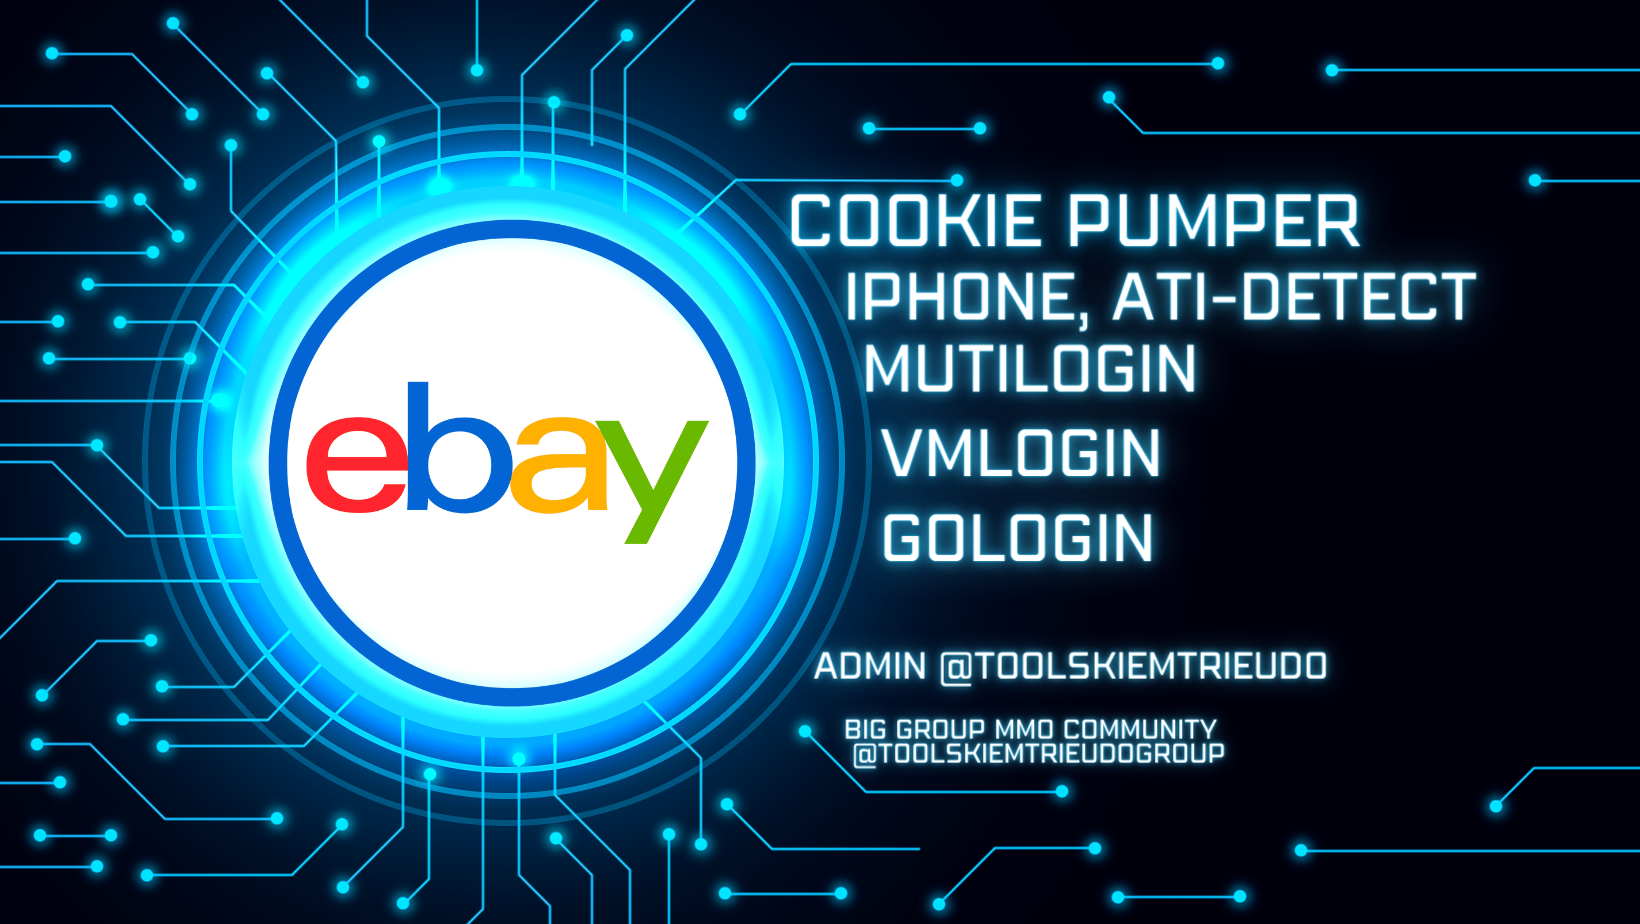 công cụ nuôi eBay trên Gologin FREE như người dùng thật- eBay cookie Pumper on Gologin FREE Automation like a human